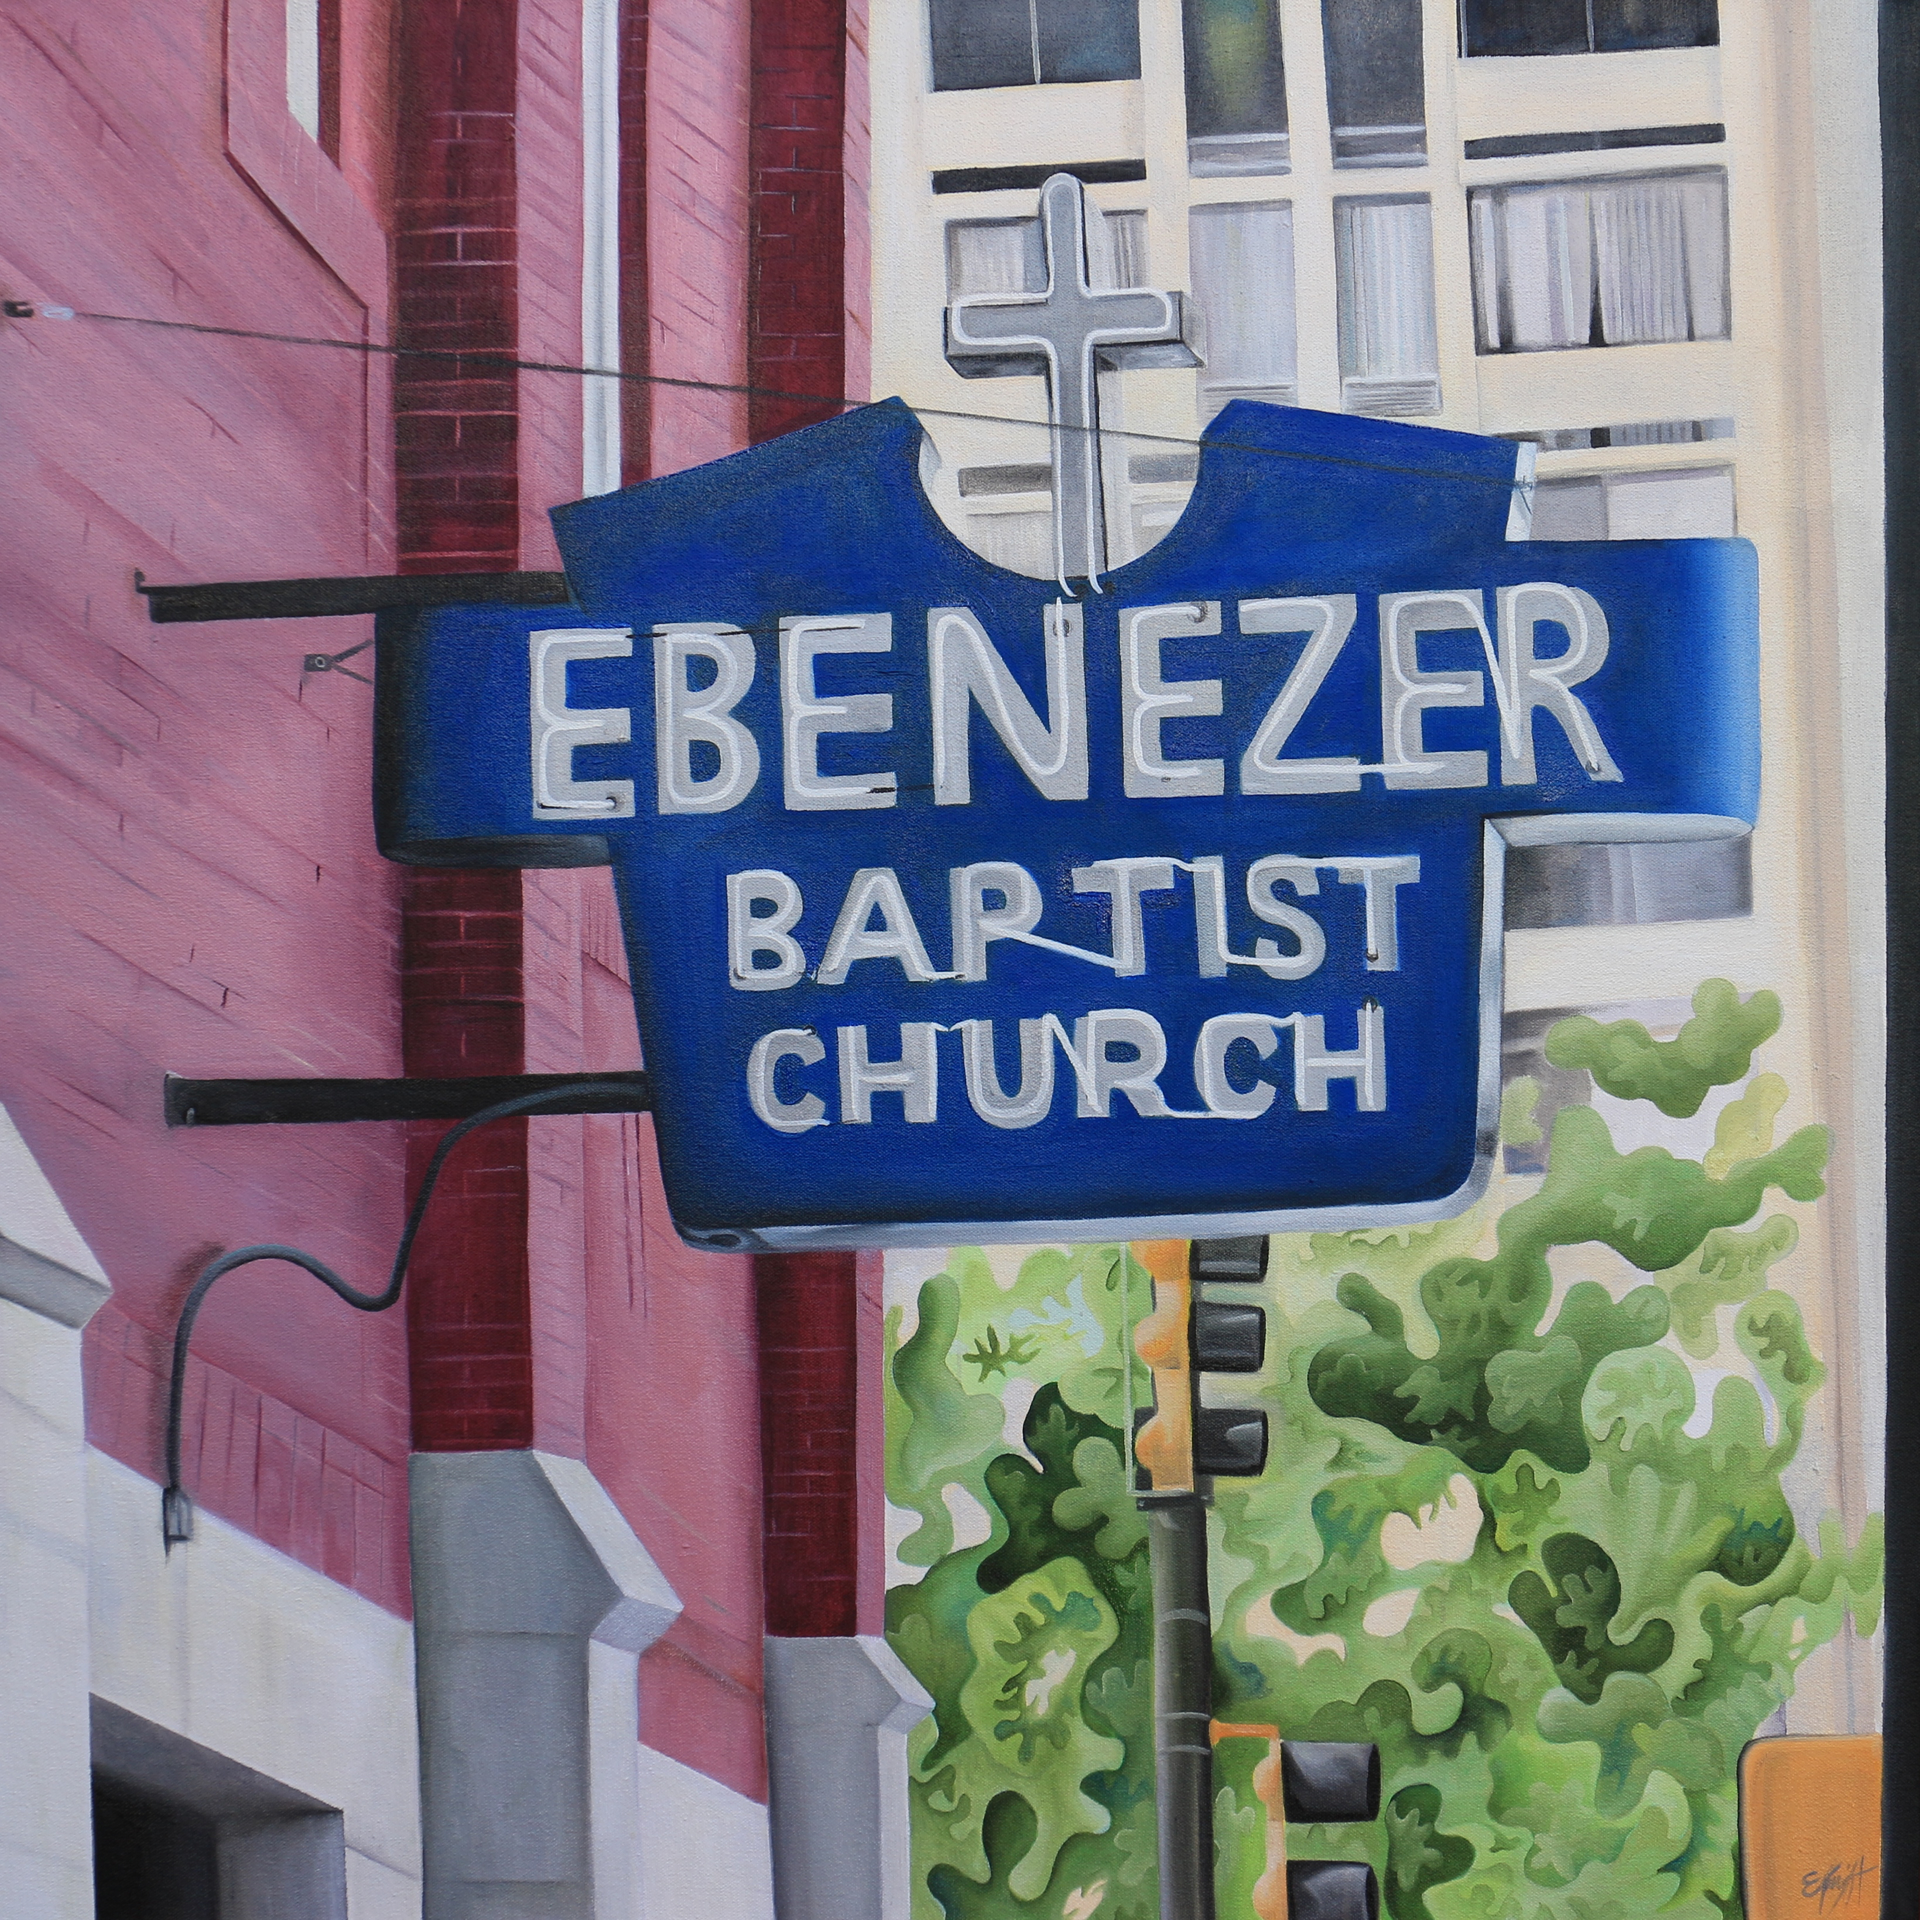 Ebenezer Baptist Church  by Emma Knight